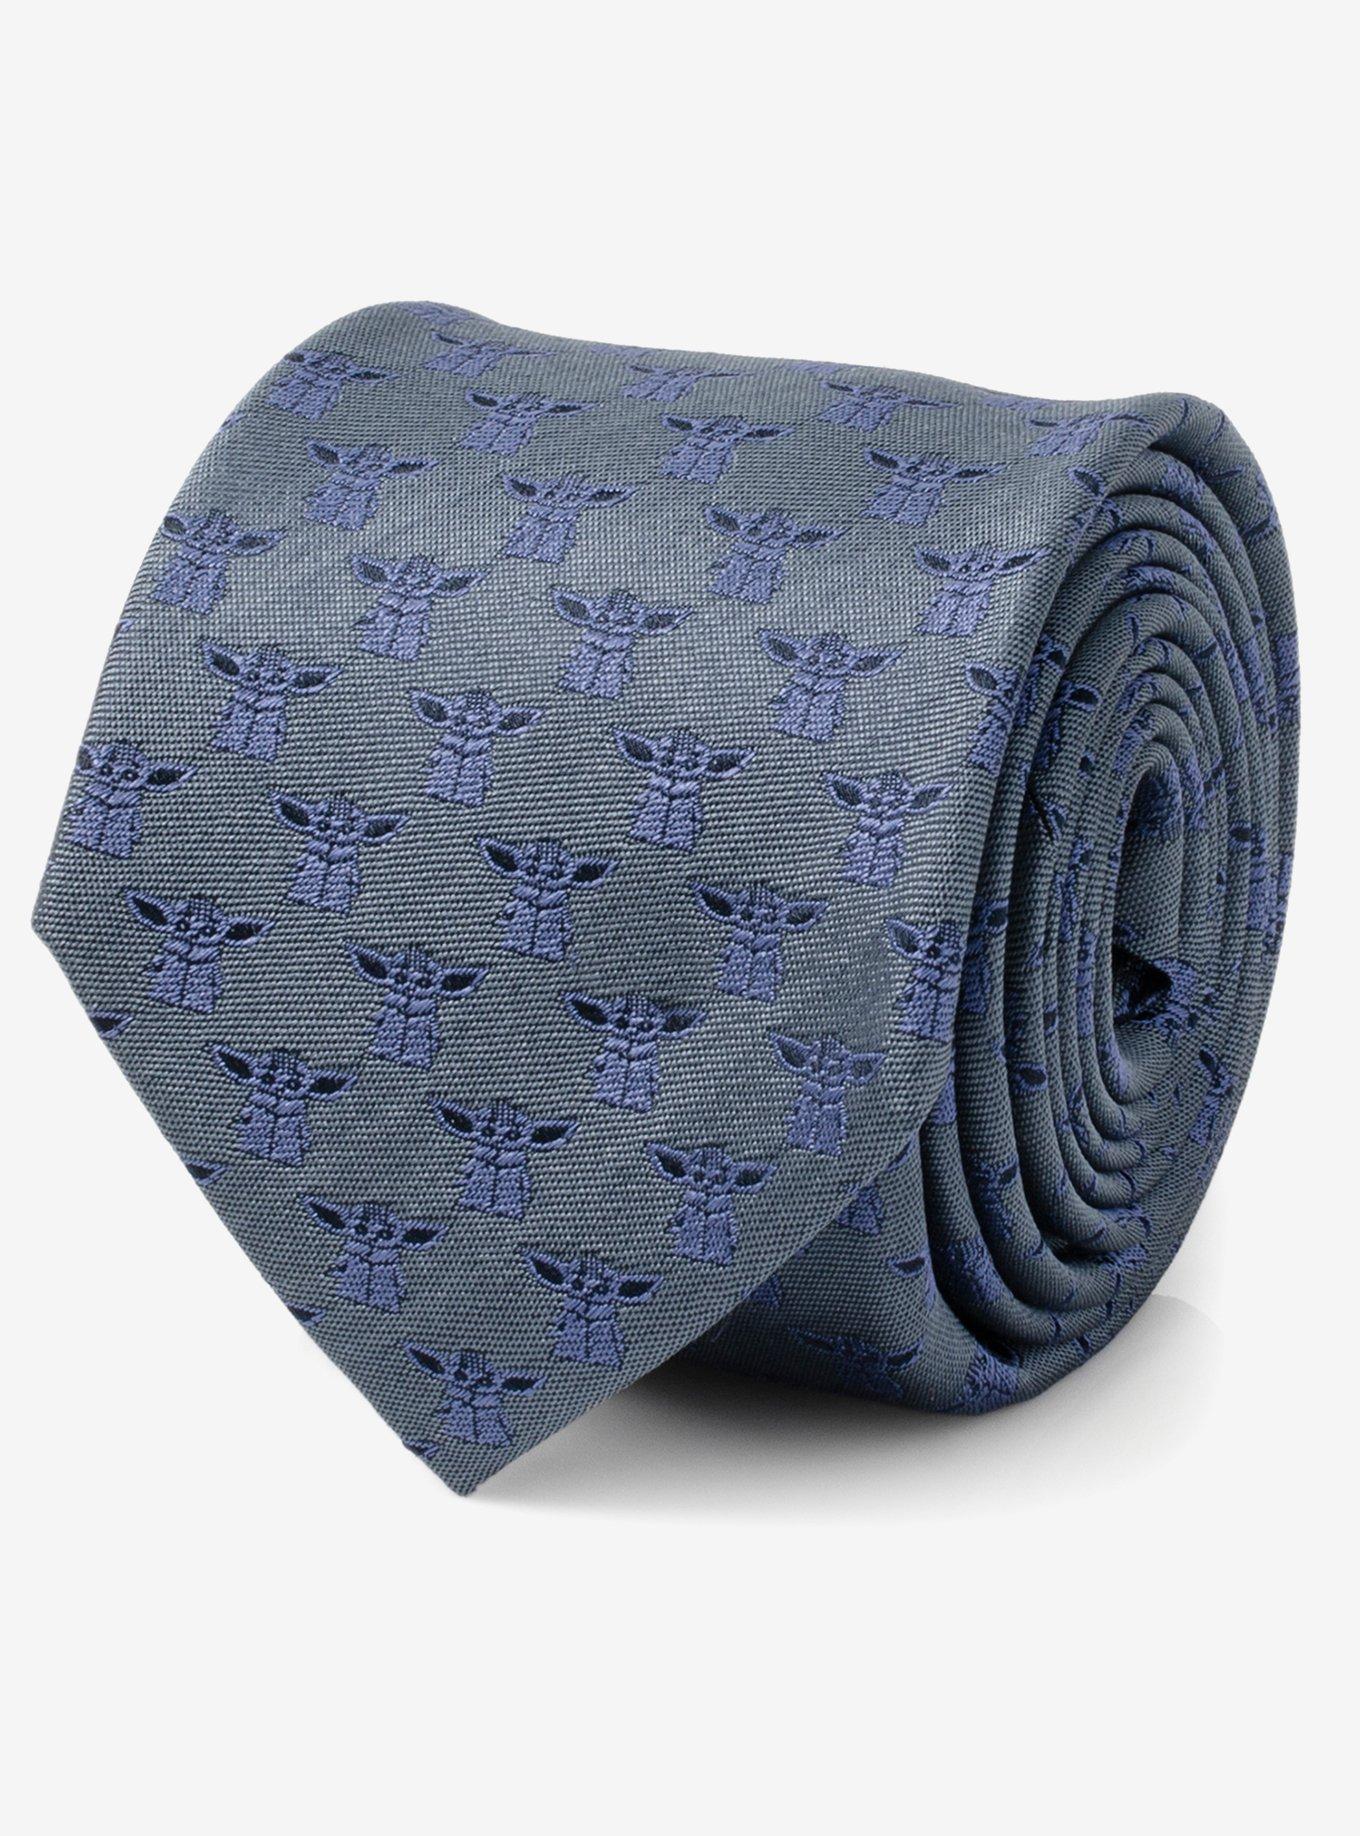 Star Wars Men's Grogu Navy Blue Tie